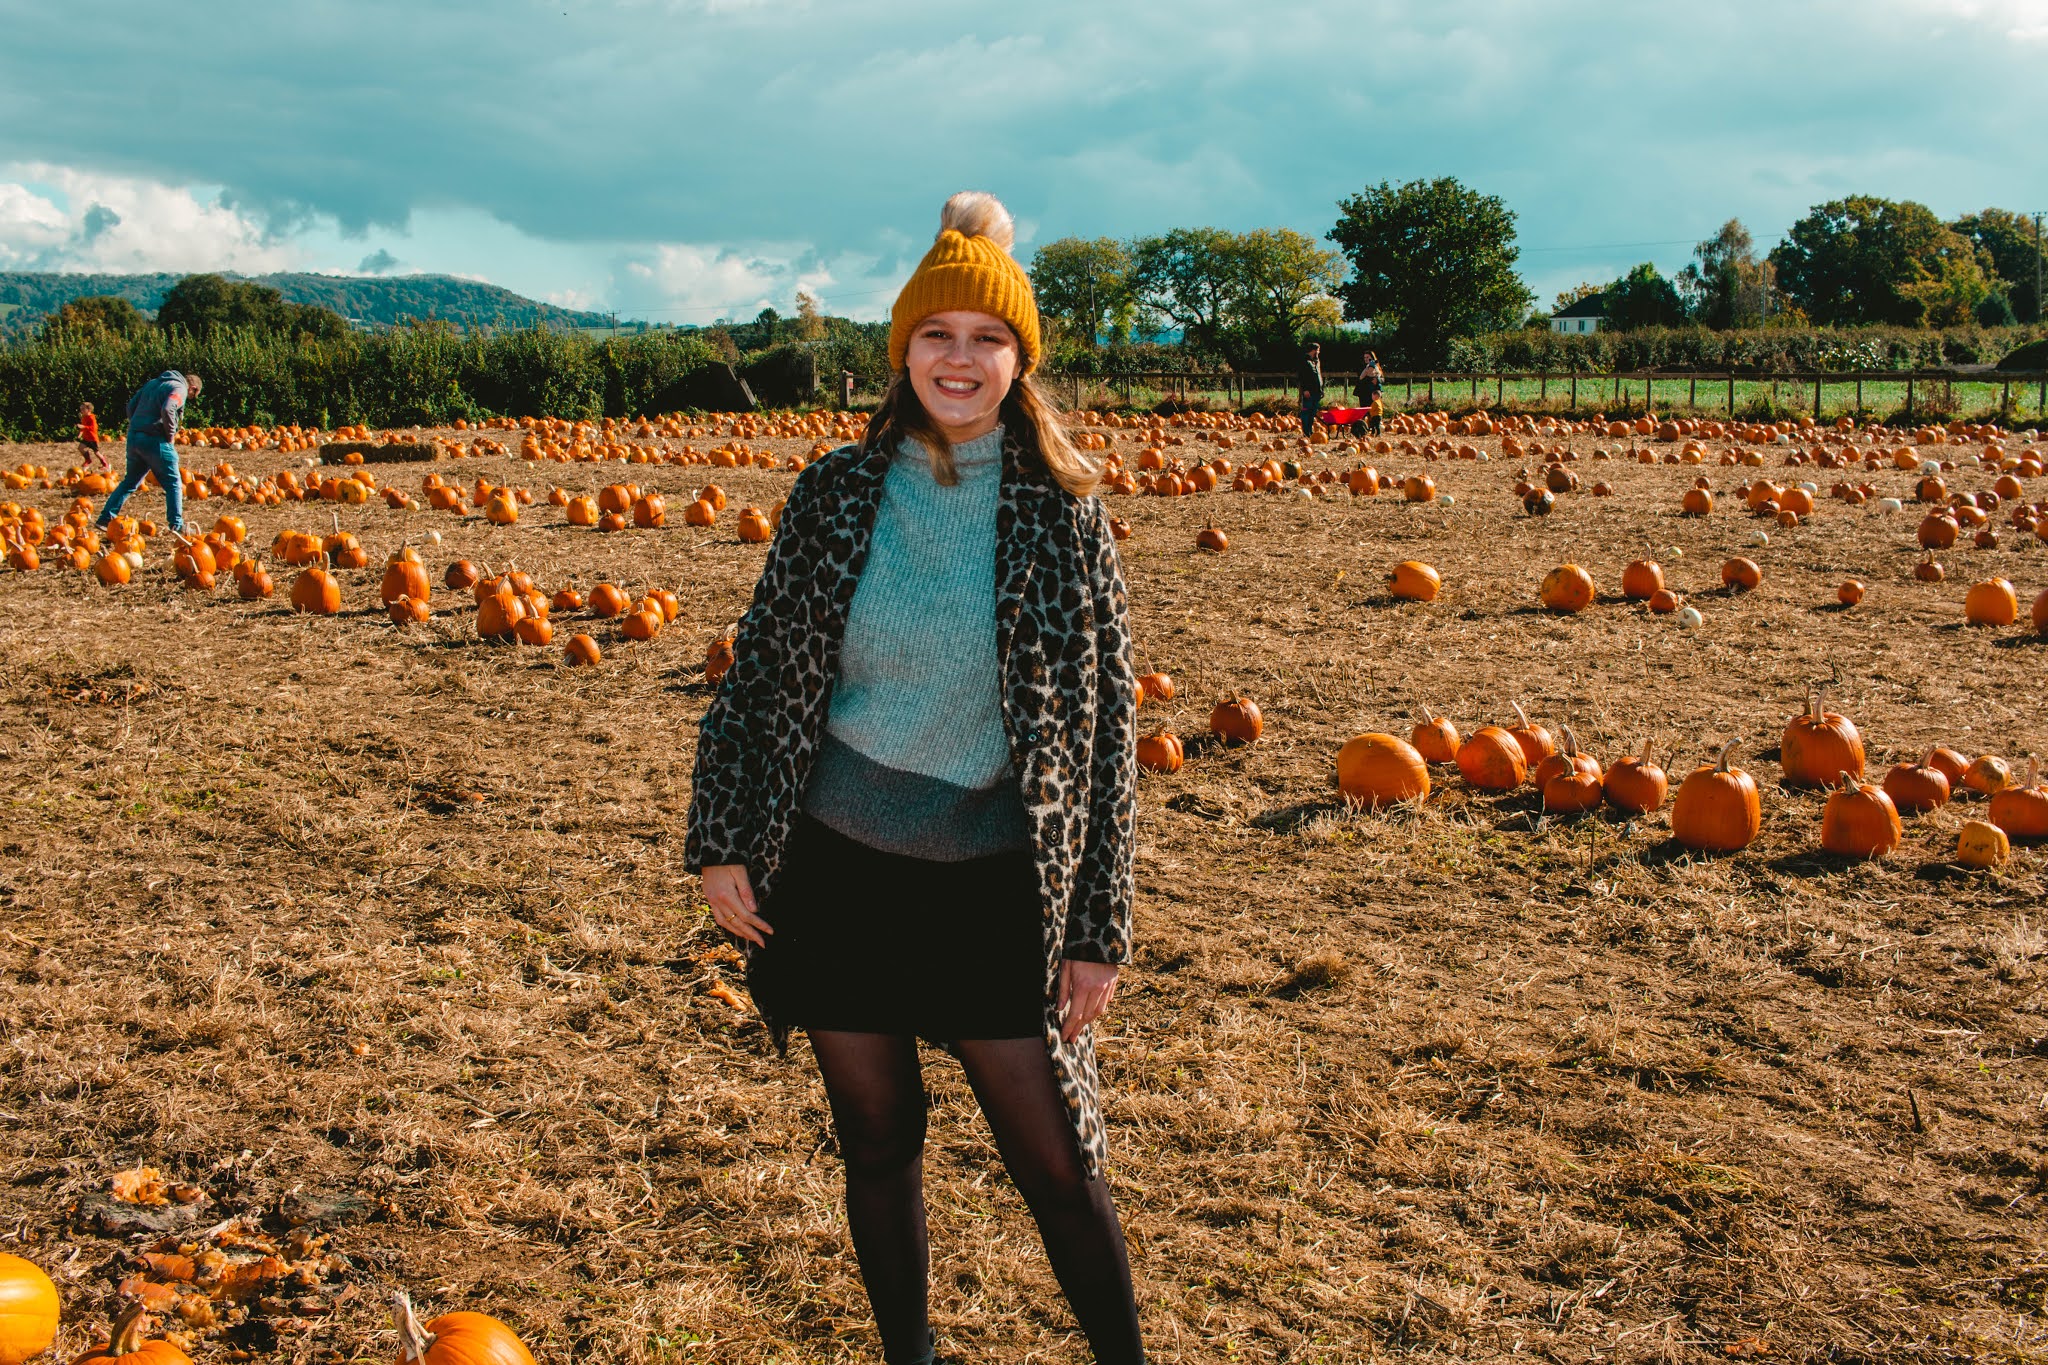 Girl with Autumn Pumpkins at Pumpkin Patch from Fall Pumpkin Picking Autumn Activities Blog Post